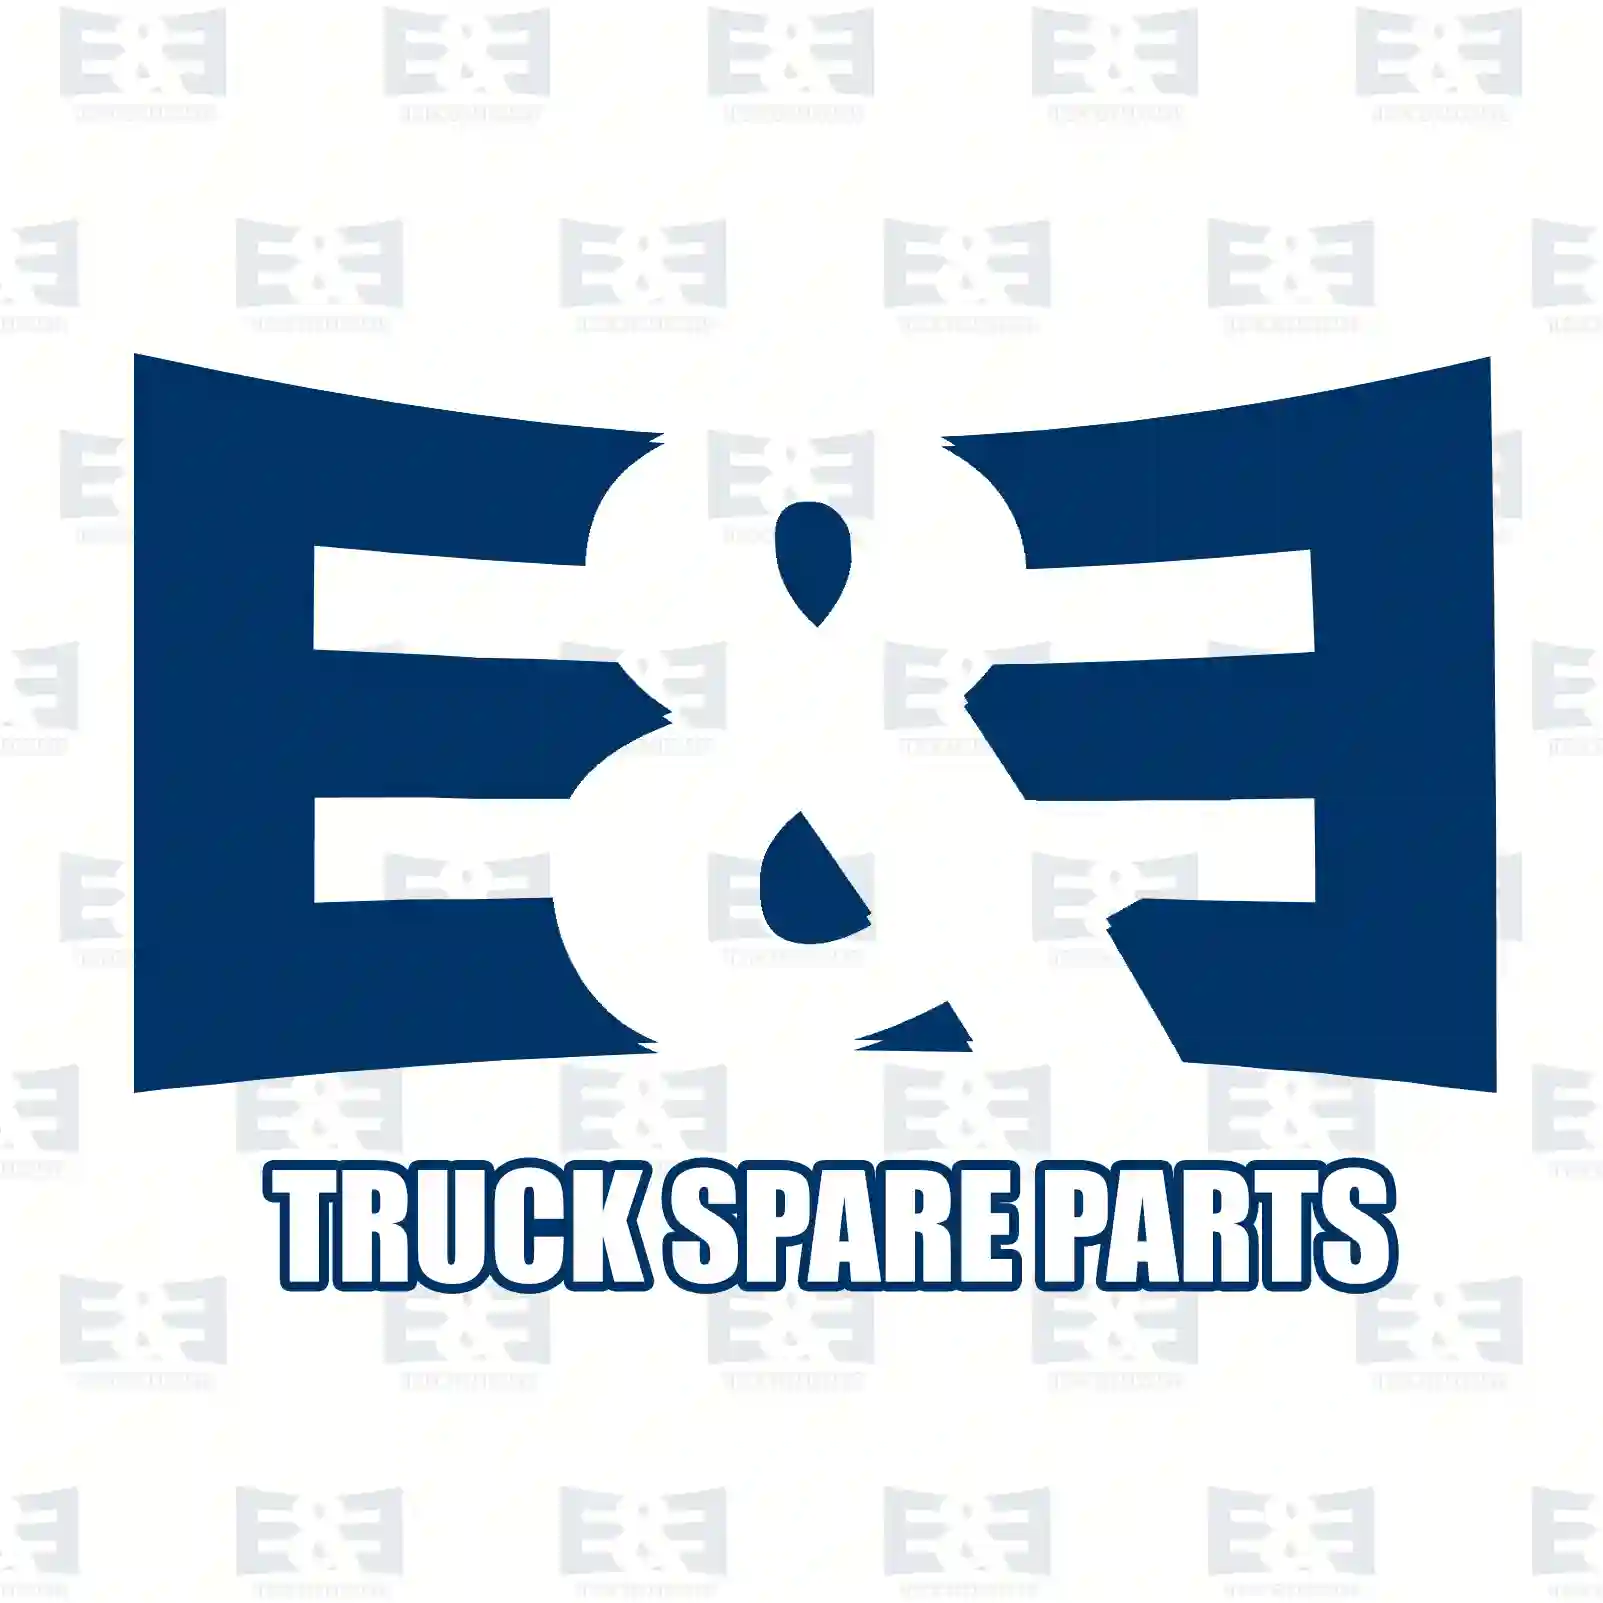 Fan clutch, 2E2202669, 04852294, 4852294, 99447106 ||  2E2202669 E&E Truck Spare Parts | Truck Spare Parts, Auotomotive Spare Parts Fan clutch, 2E2202669, 04852294, 4852294, 99447106 ||  2E2202669 E&E Truck Spare Parts | Truck Spare Parts, Auotomotive Spare Parts